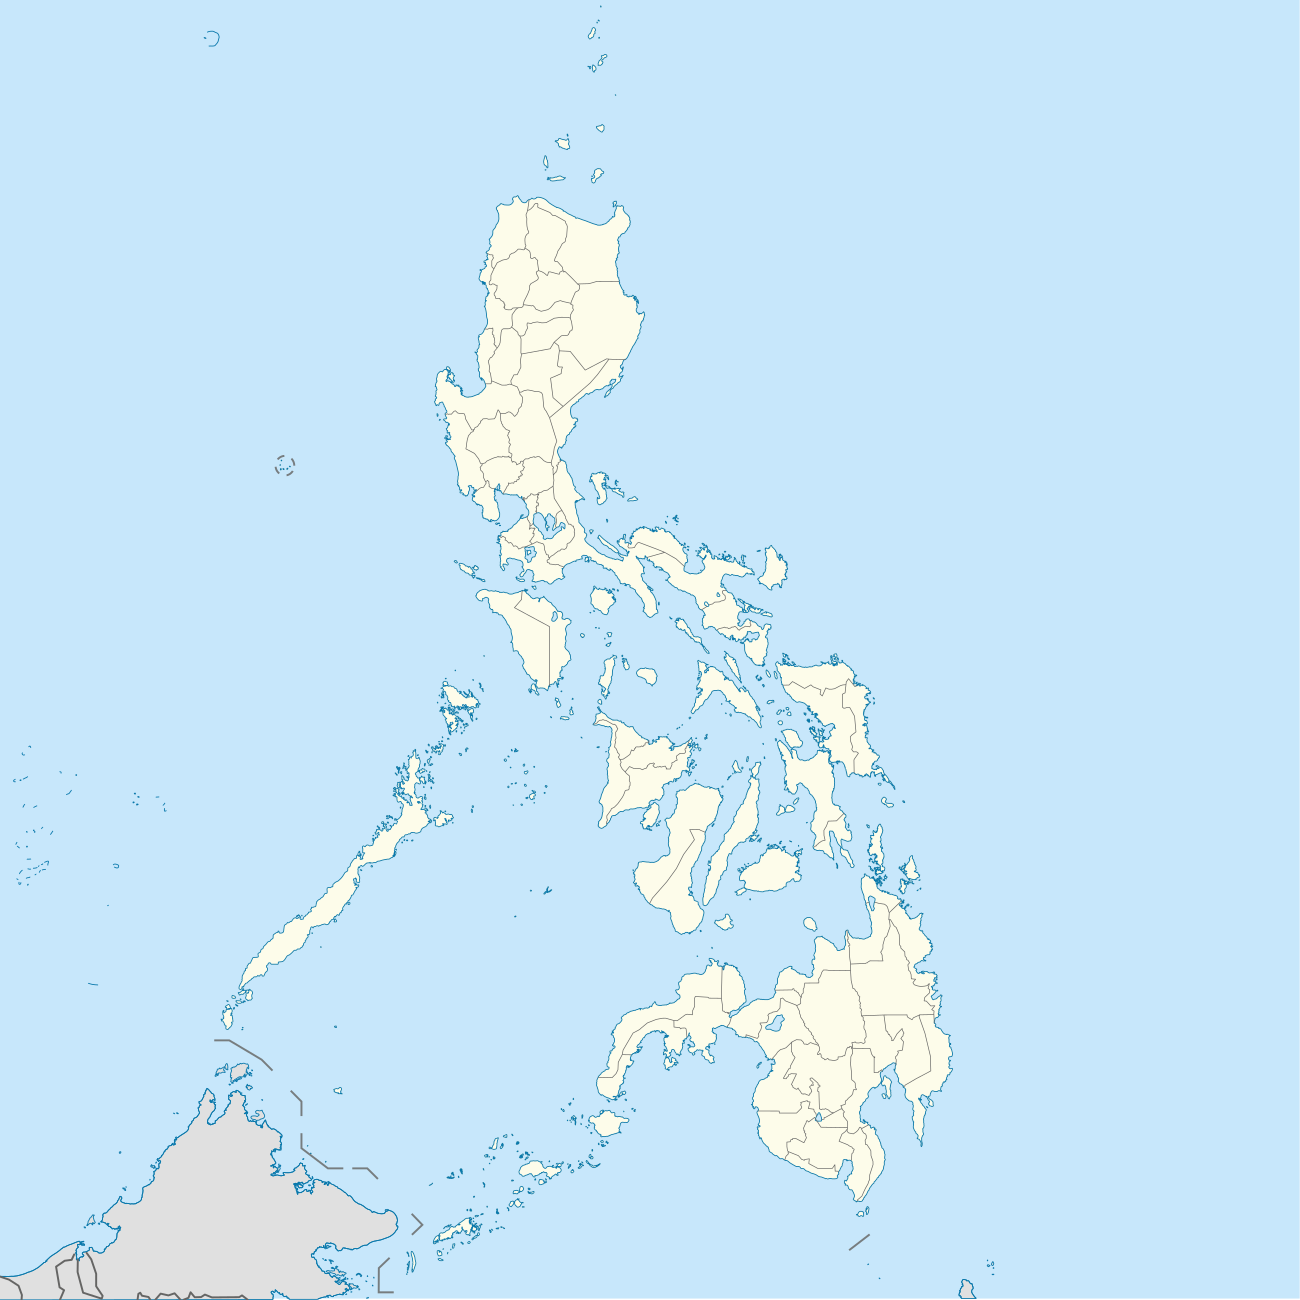 Списъкът на президентите на Филипините по провинции се намира във Филипините